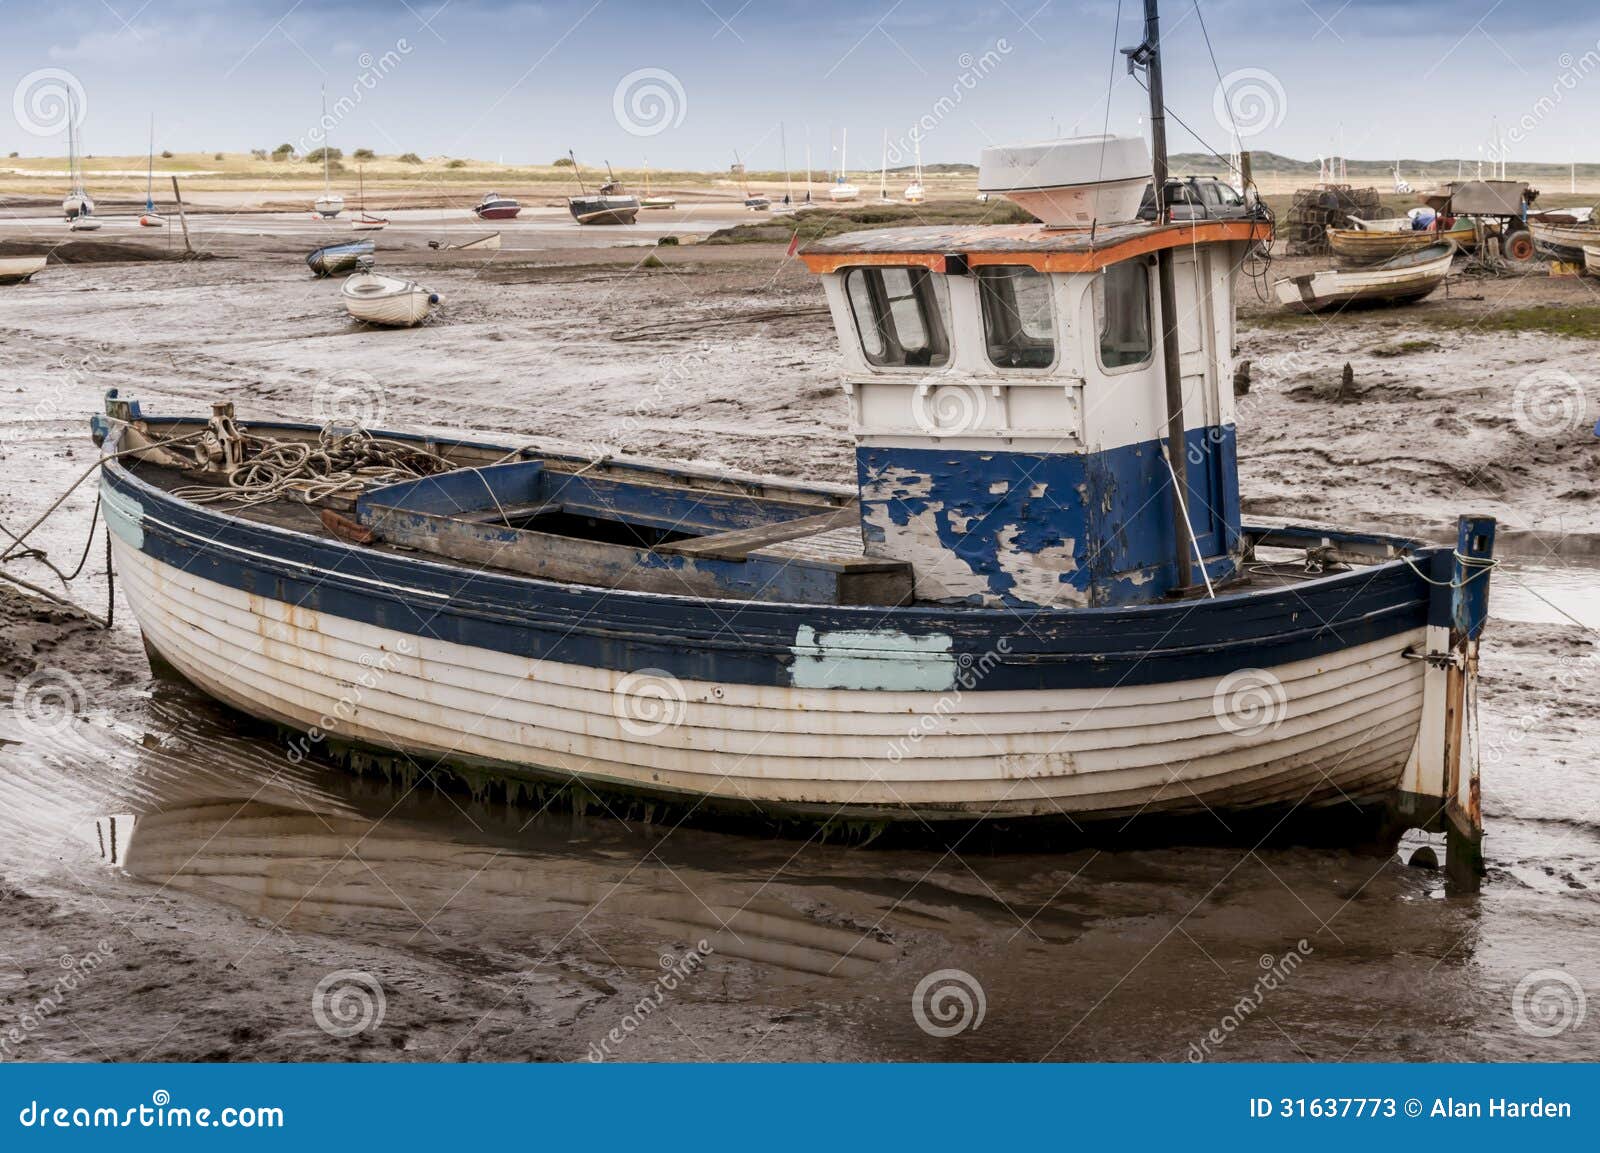 Op grote schaal geest Varken Oude houten vissersboot stock afbeelding. Image of klein - 31637773